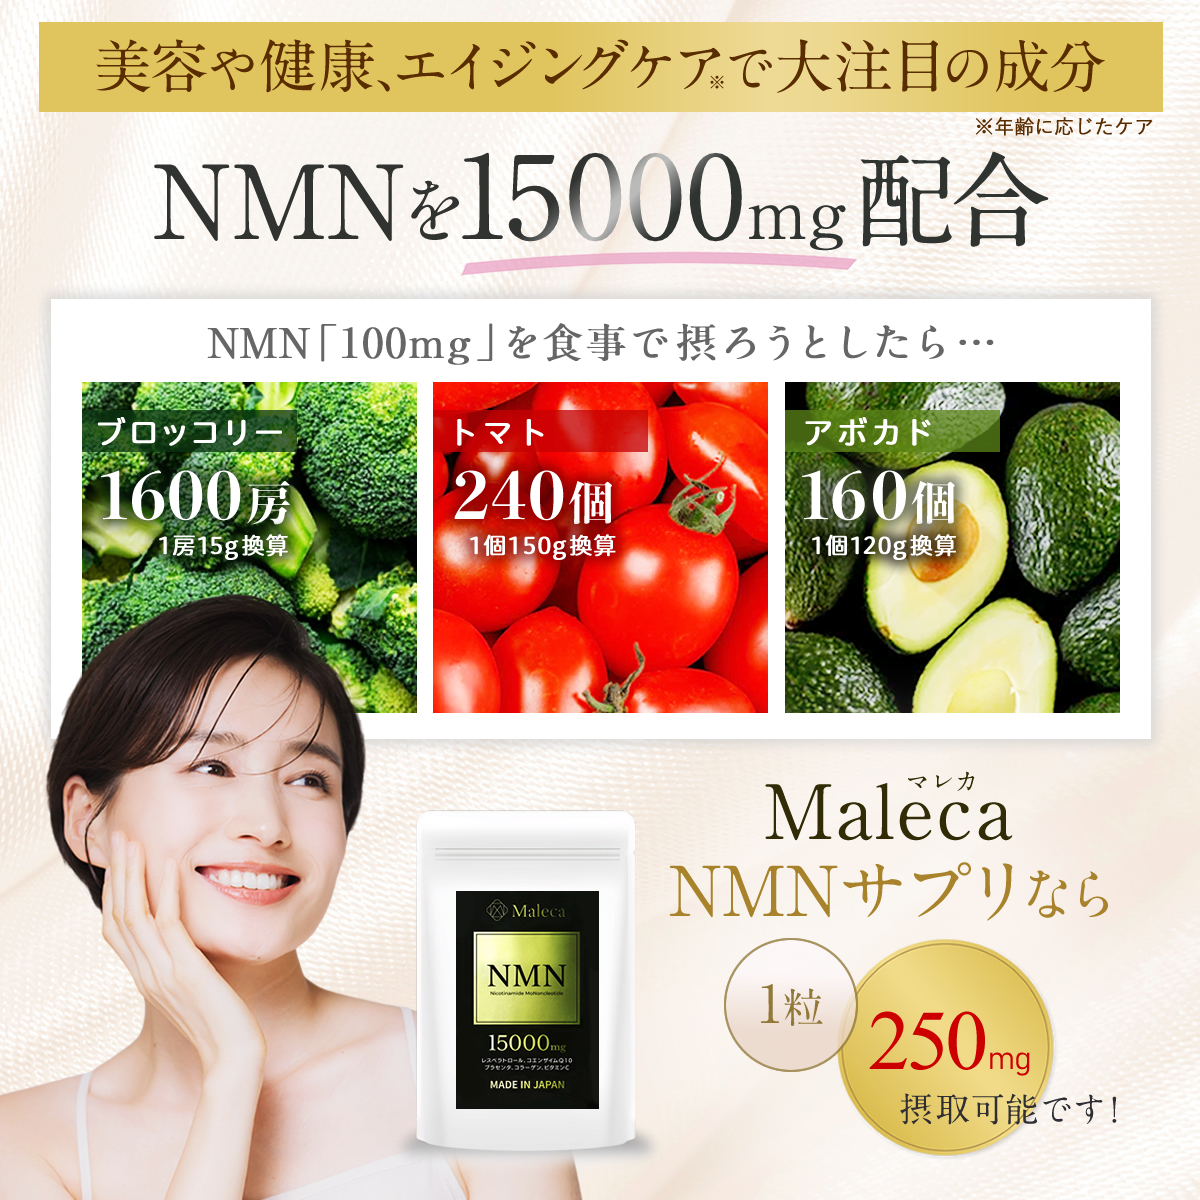 NMN 15000㎎ 日本製 プラセンタ レスベラトロール コエンザイム コラーゲン配合 30日分 60カプセル 純度99%以上 国内GMP認定 サプリメントの画像1